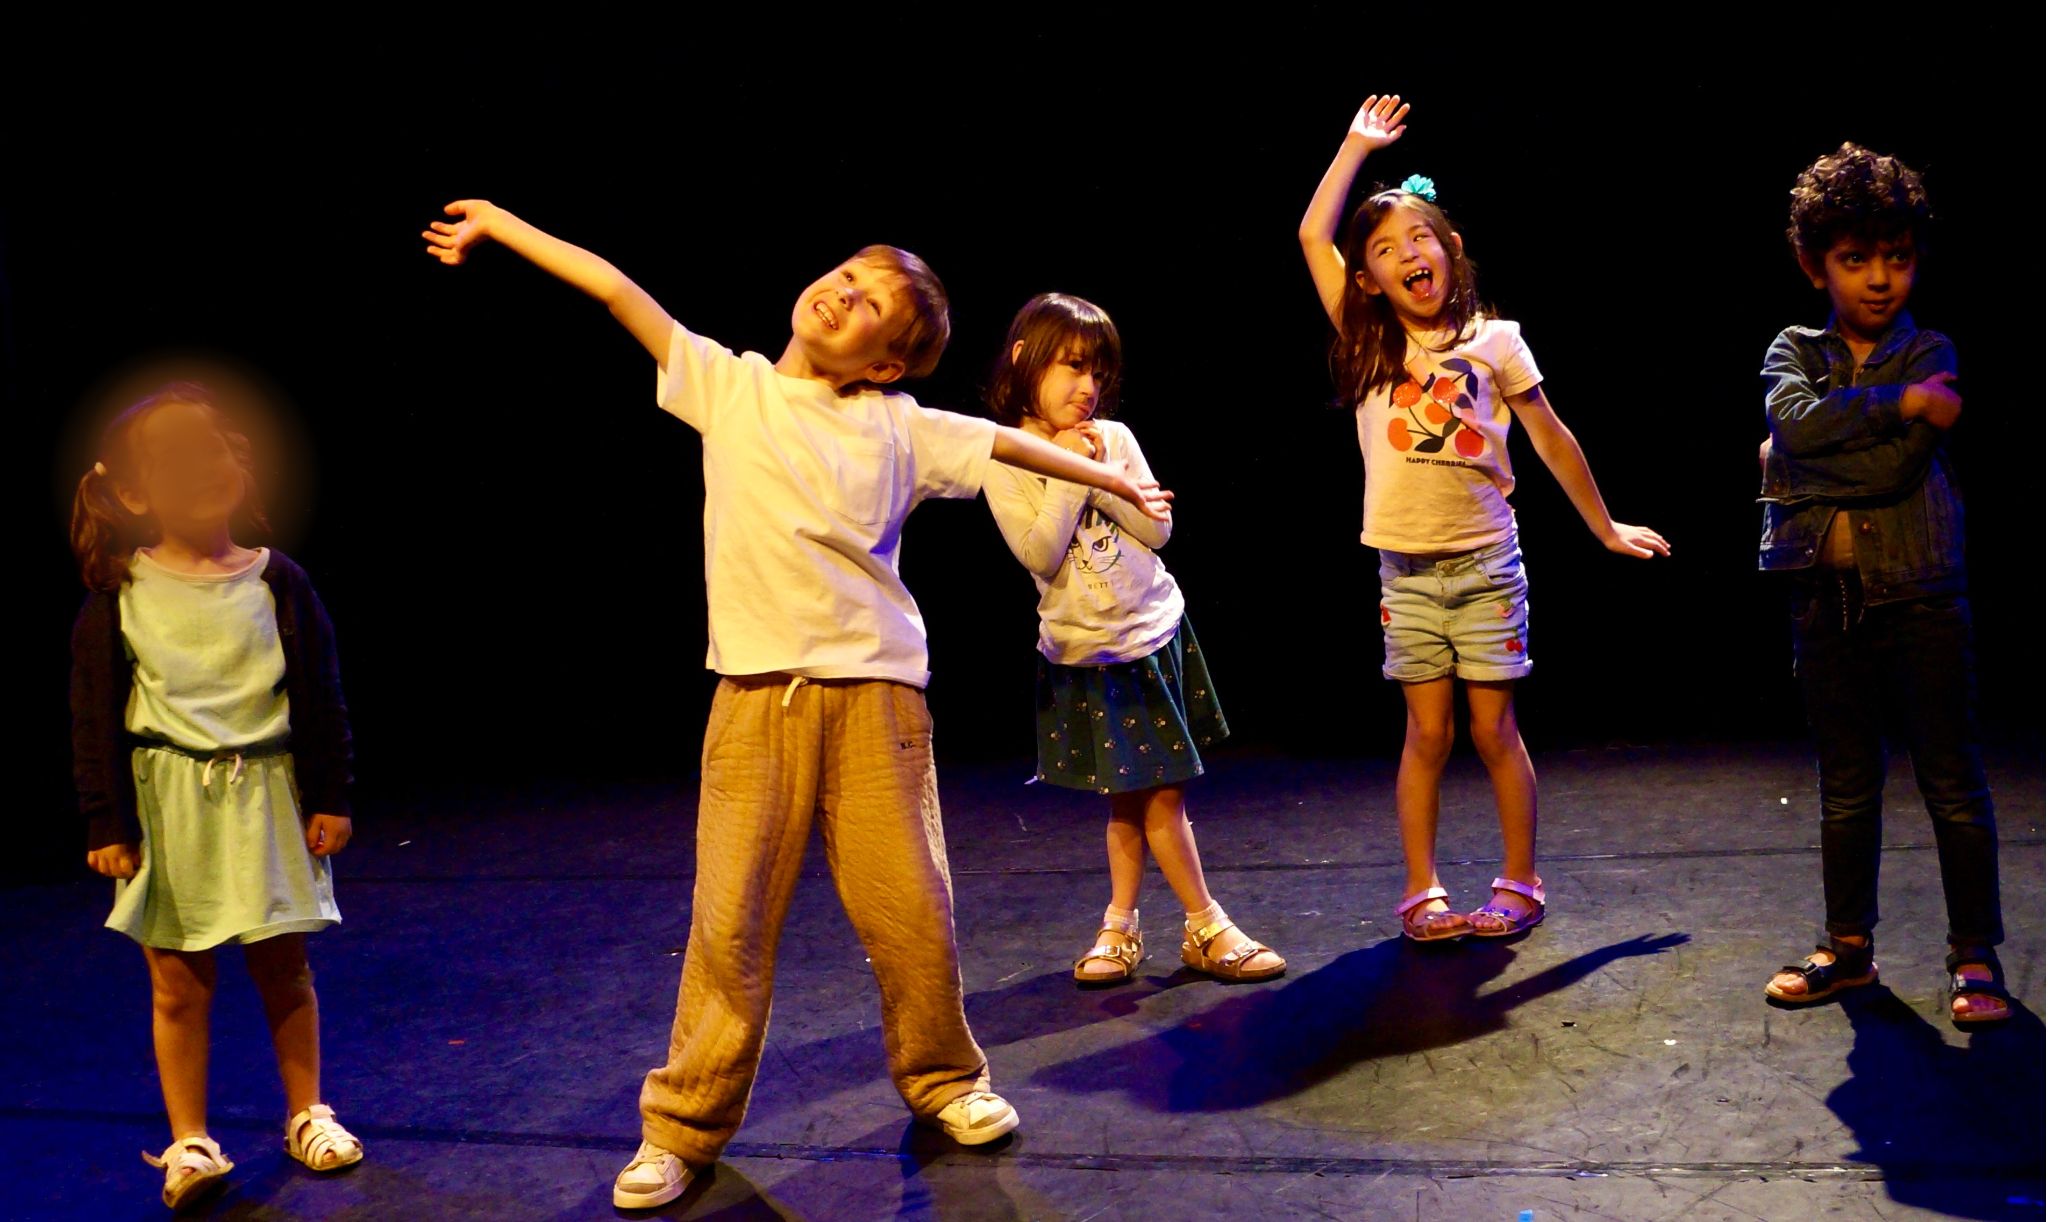 Le spectacle de fin d'année des enfants d'un cours de théâtre de la compagnie maya